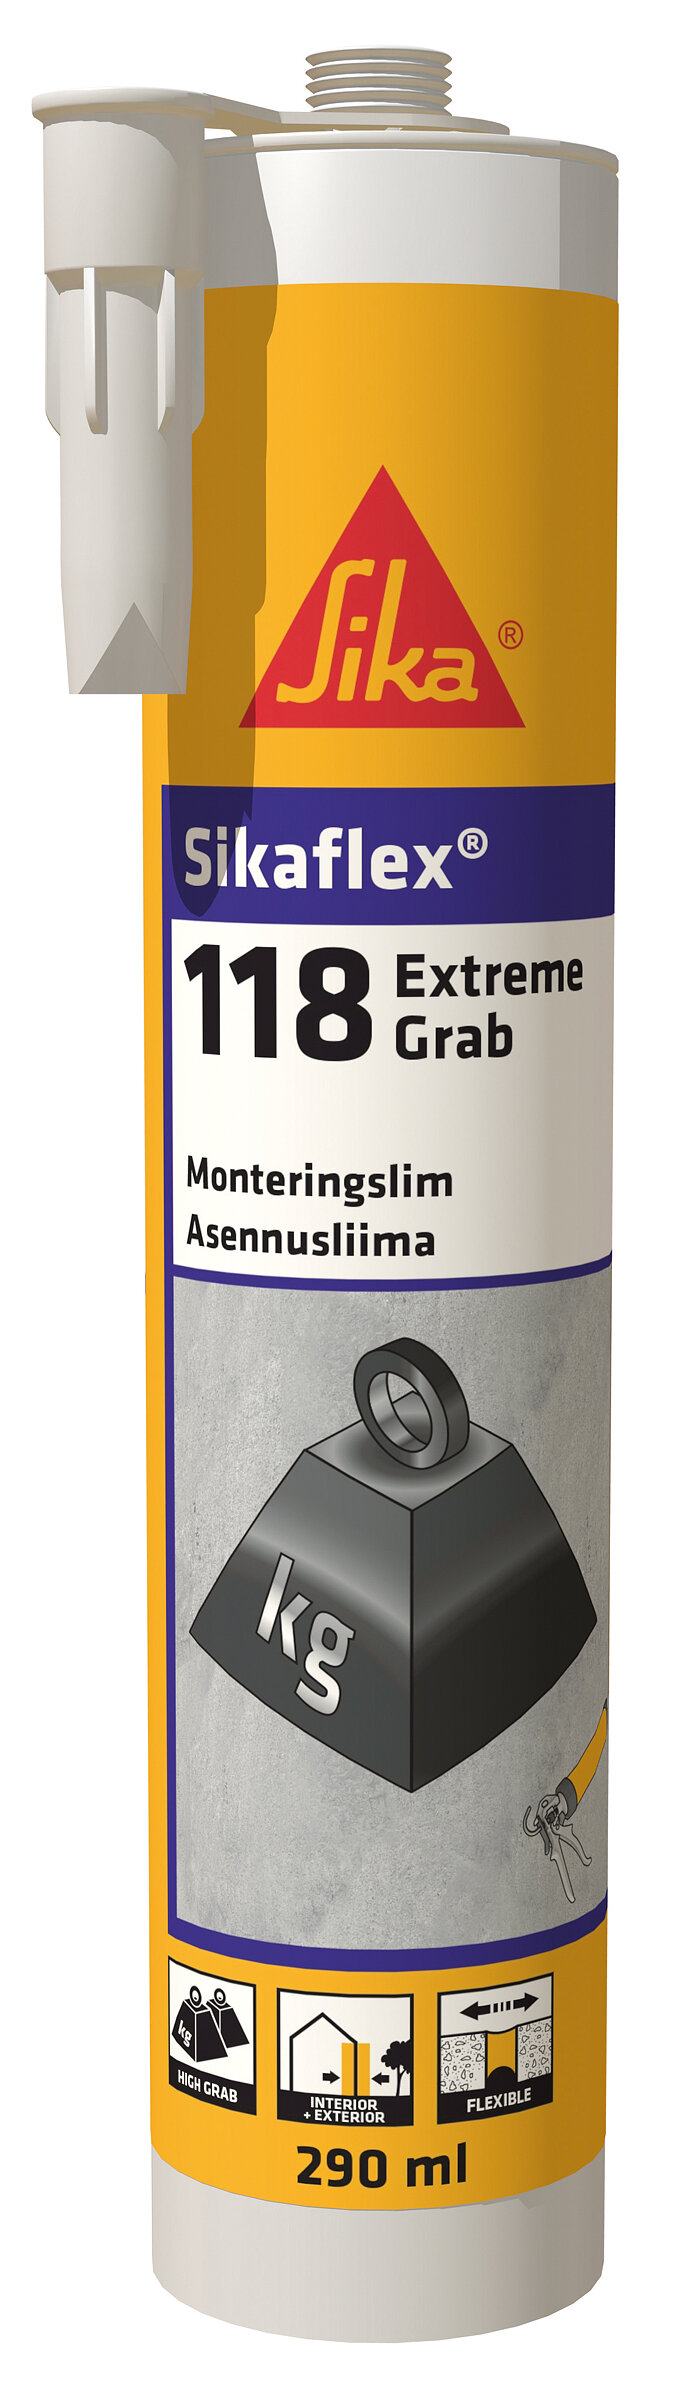 Sikaflex-118 Extreme Grab